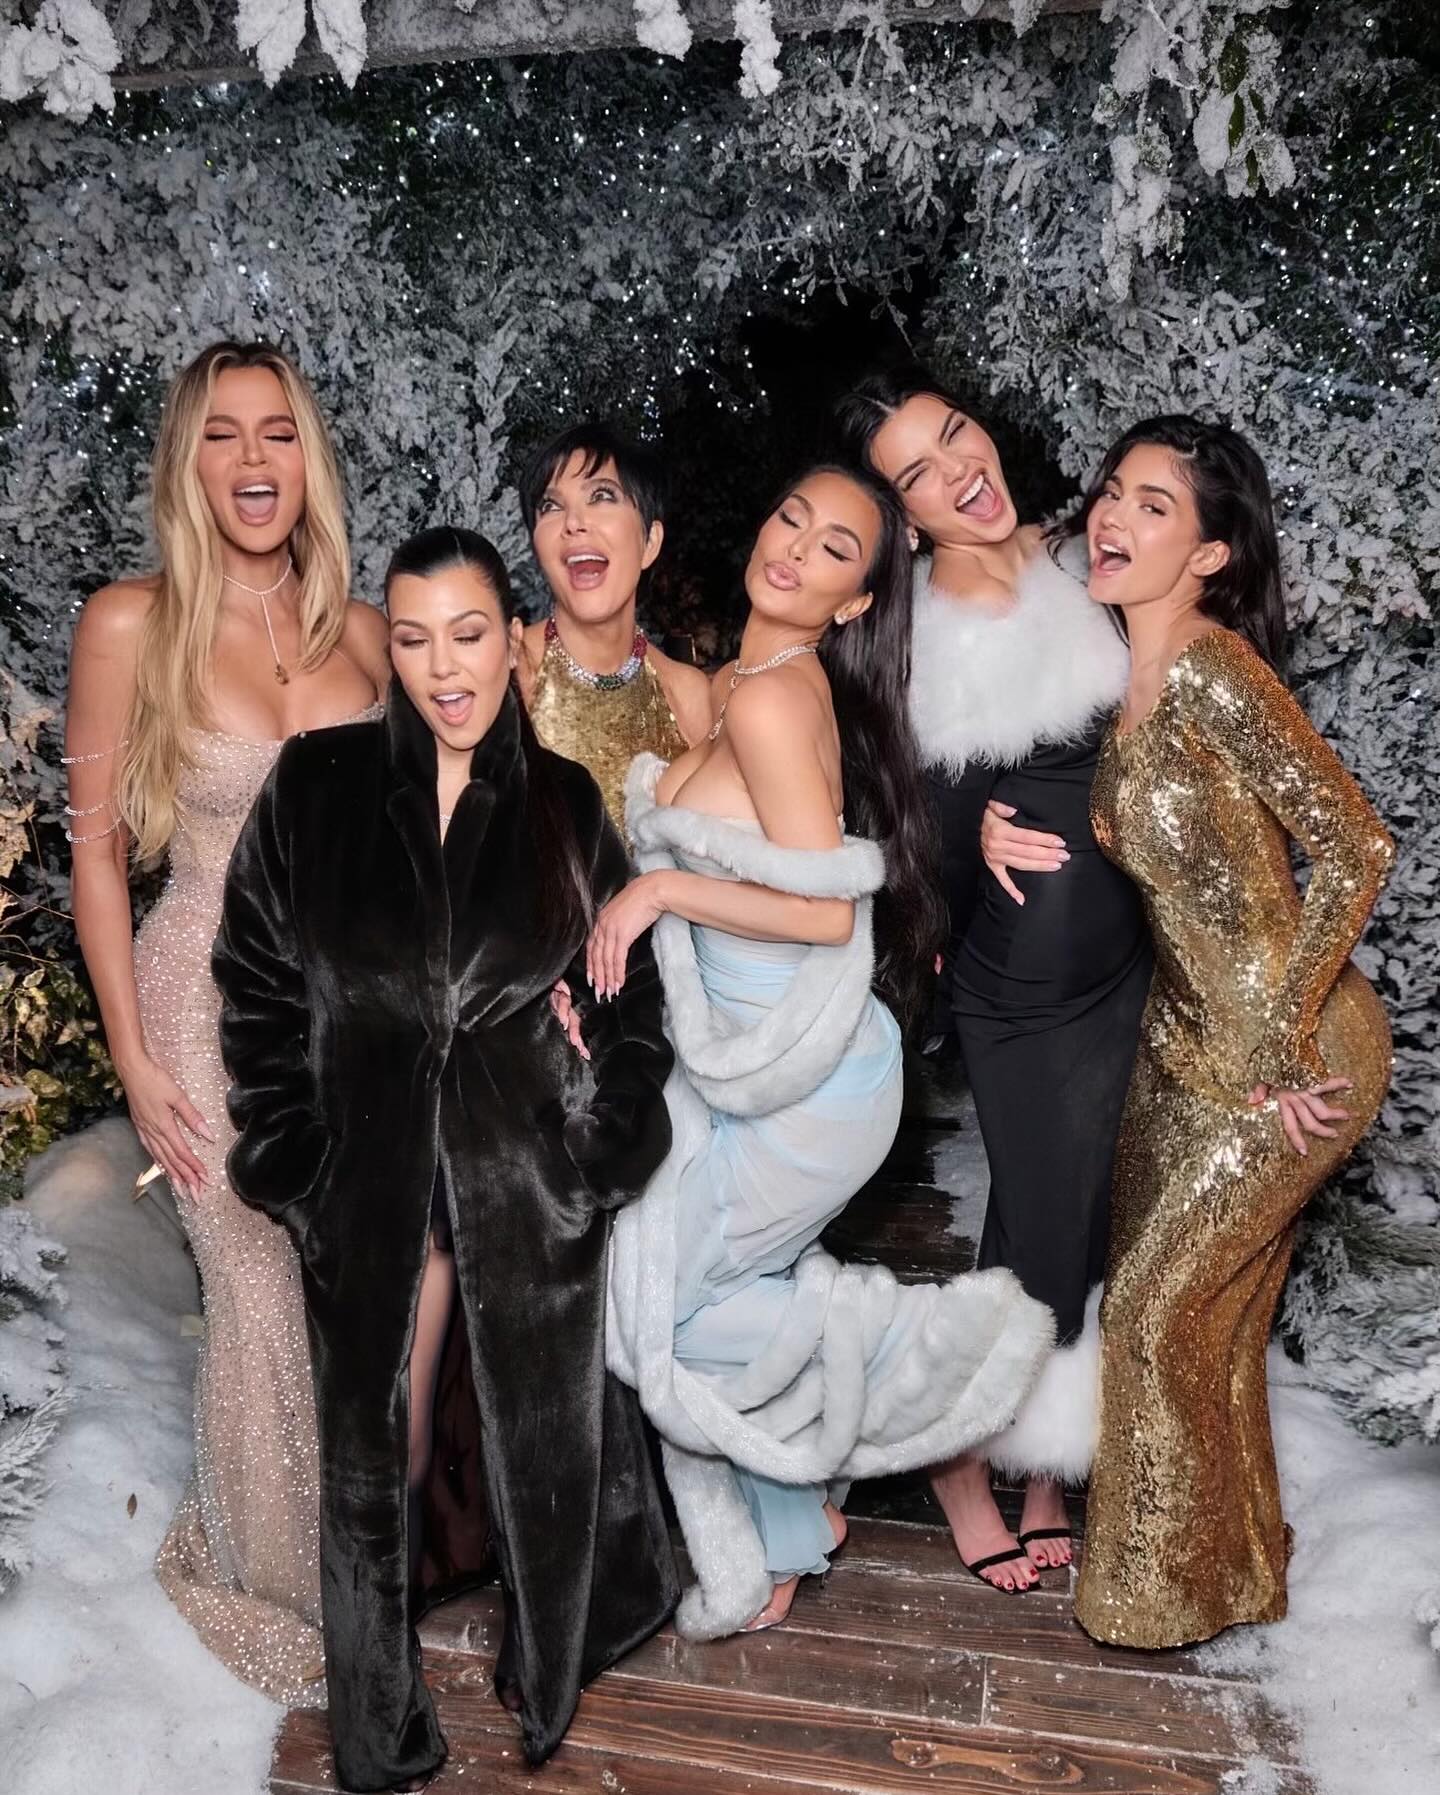 Η Kim Kardashian σκόρπισε ψεύτικο χιόνι στον κήπο της και έκανε τον κόσμο έξαλλο στο Instagram